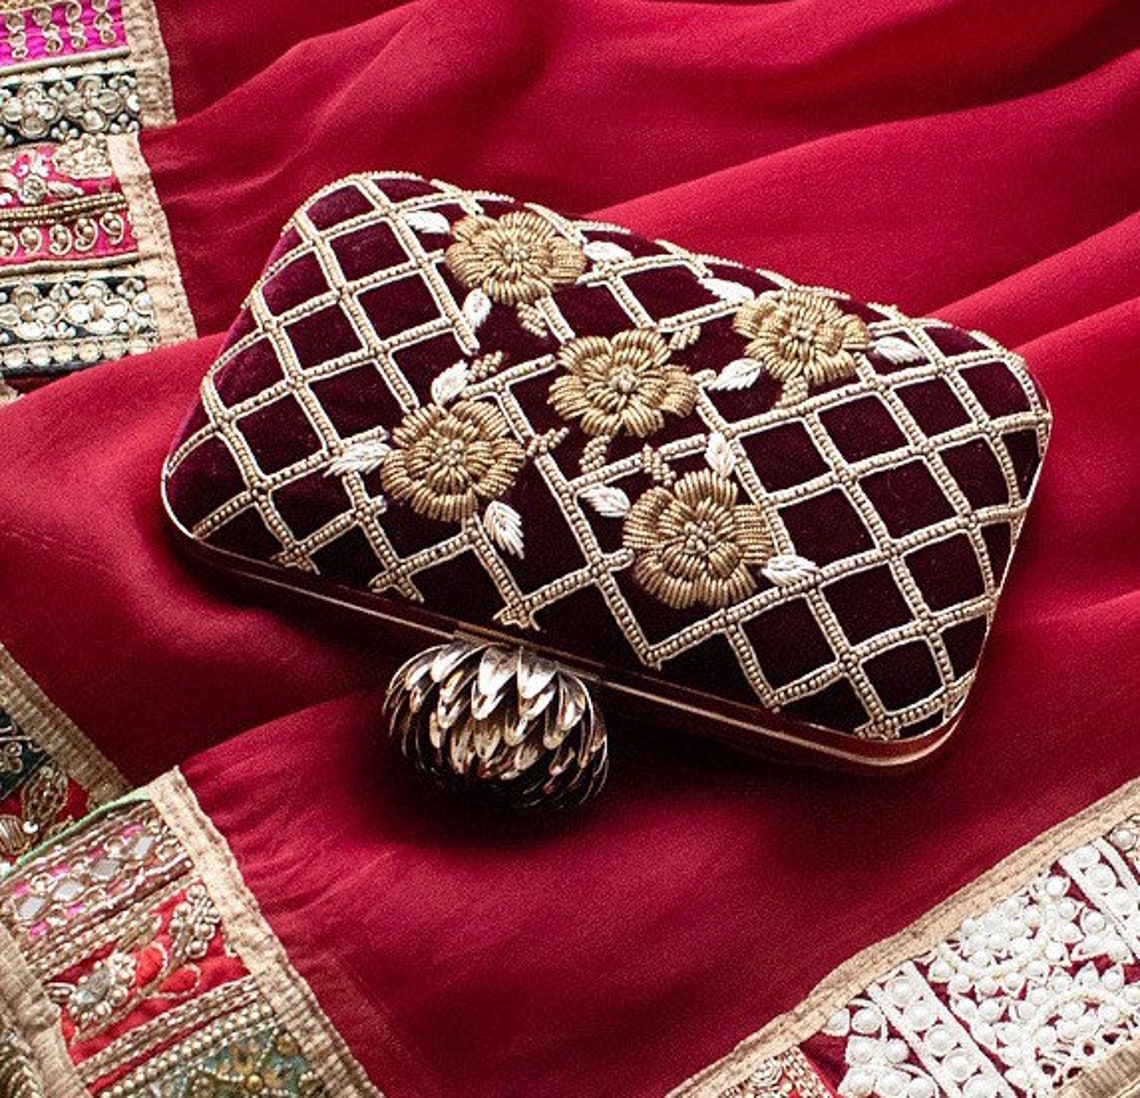 Maroon velvet zardozi clutch hand embroidery gift for her | Etsy